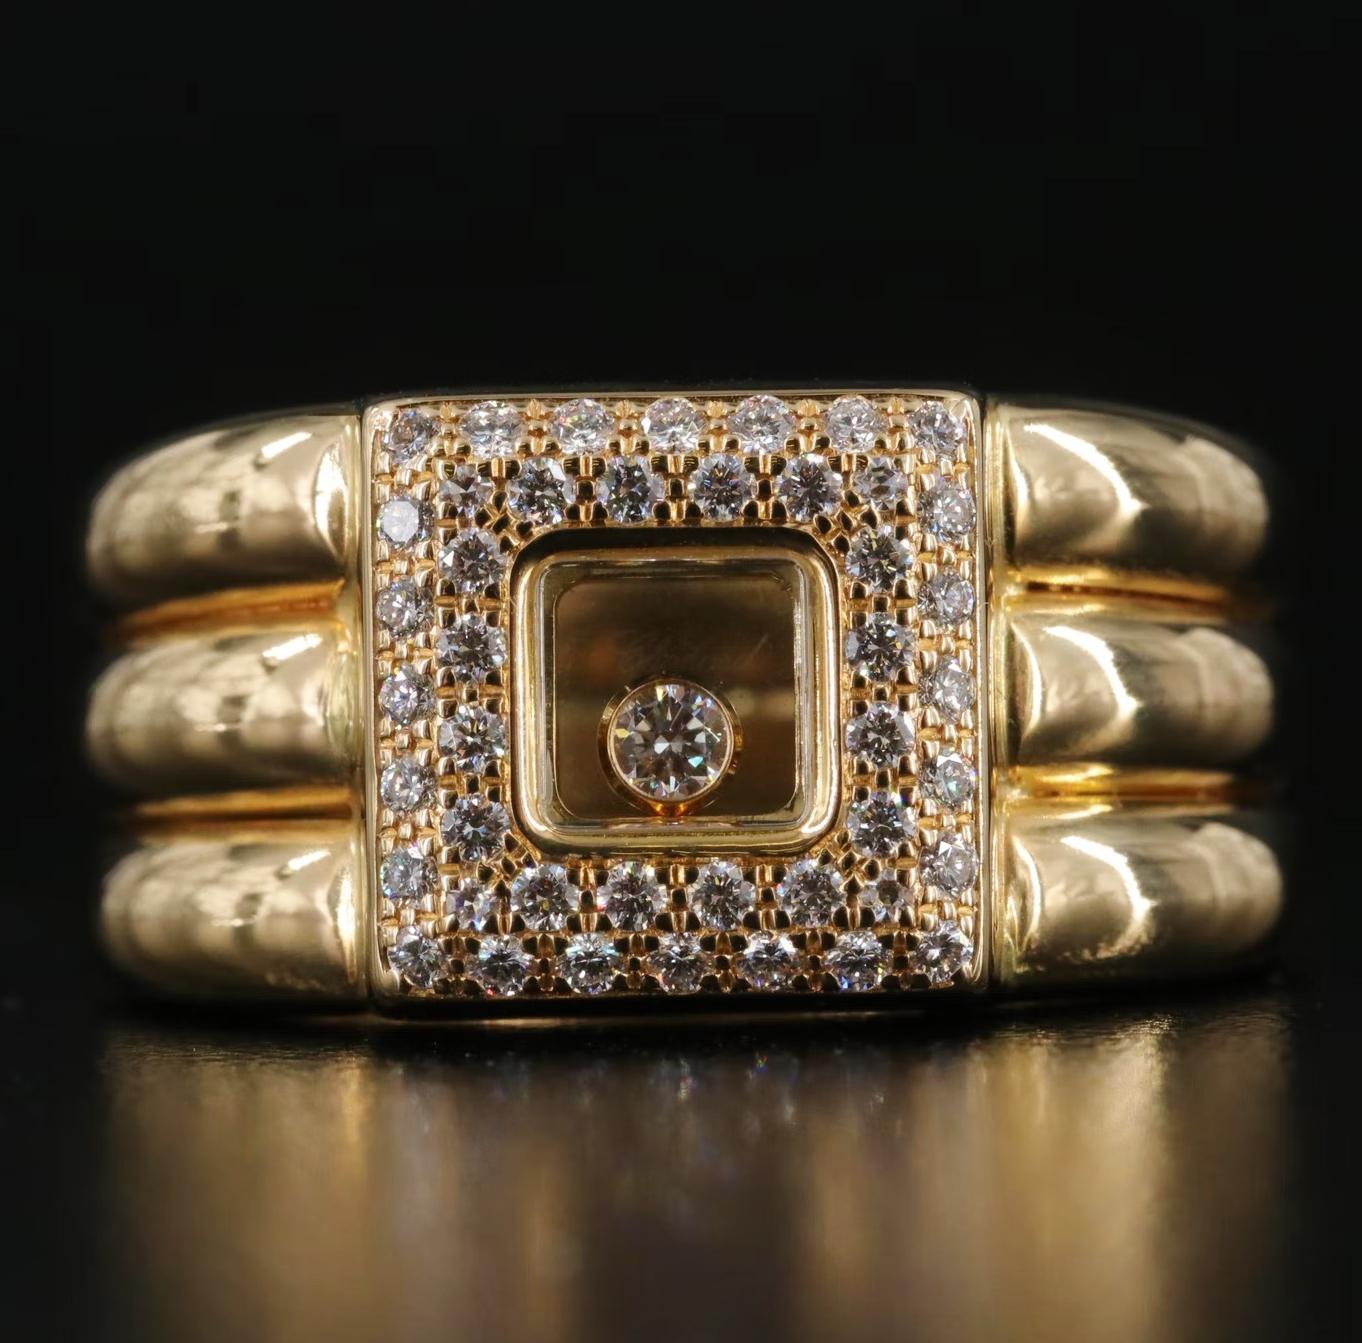 Chopard Designer Ring, gestempelt und gepunzt mit den Designerpunzen, Seriennummer (Chopard 750 91050219 82/2347-20)

Swiss made, Genf 

Happy Diamond Collection, quadratischer Ring mit dem klassischen schwebenden Diamanten 

0,5 CWT eines